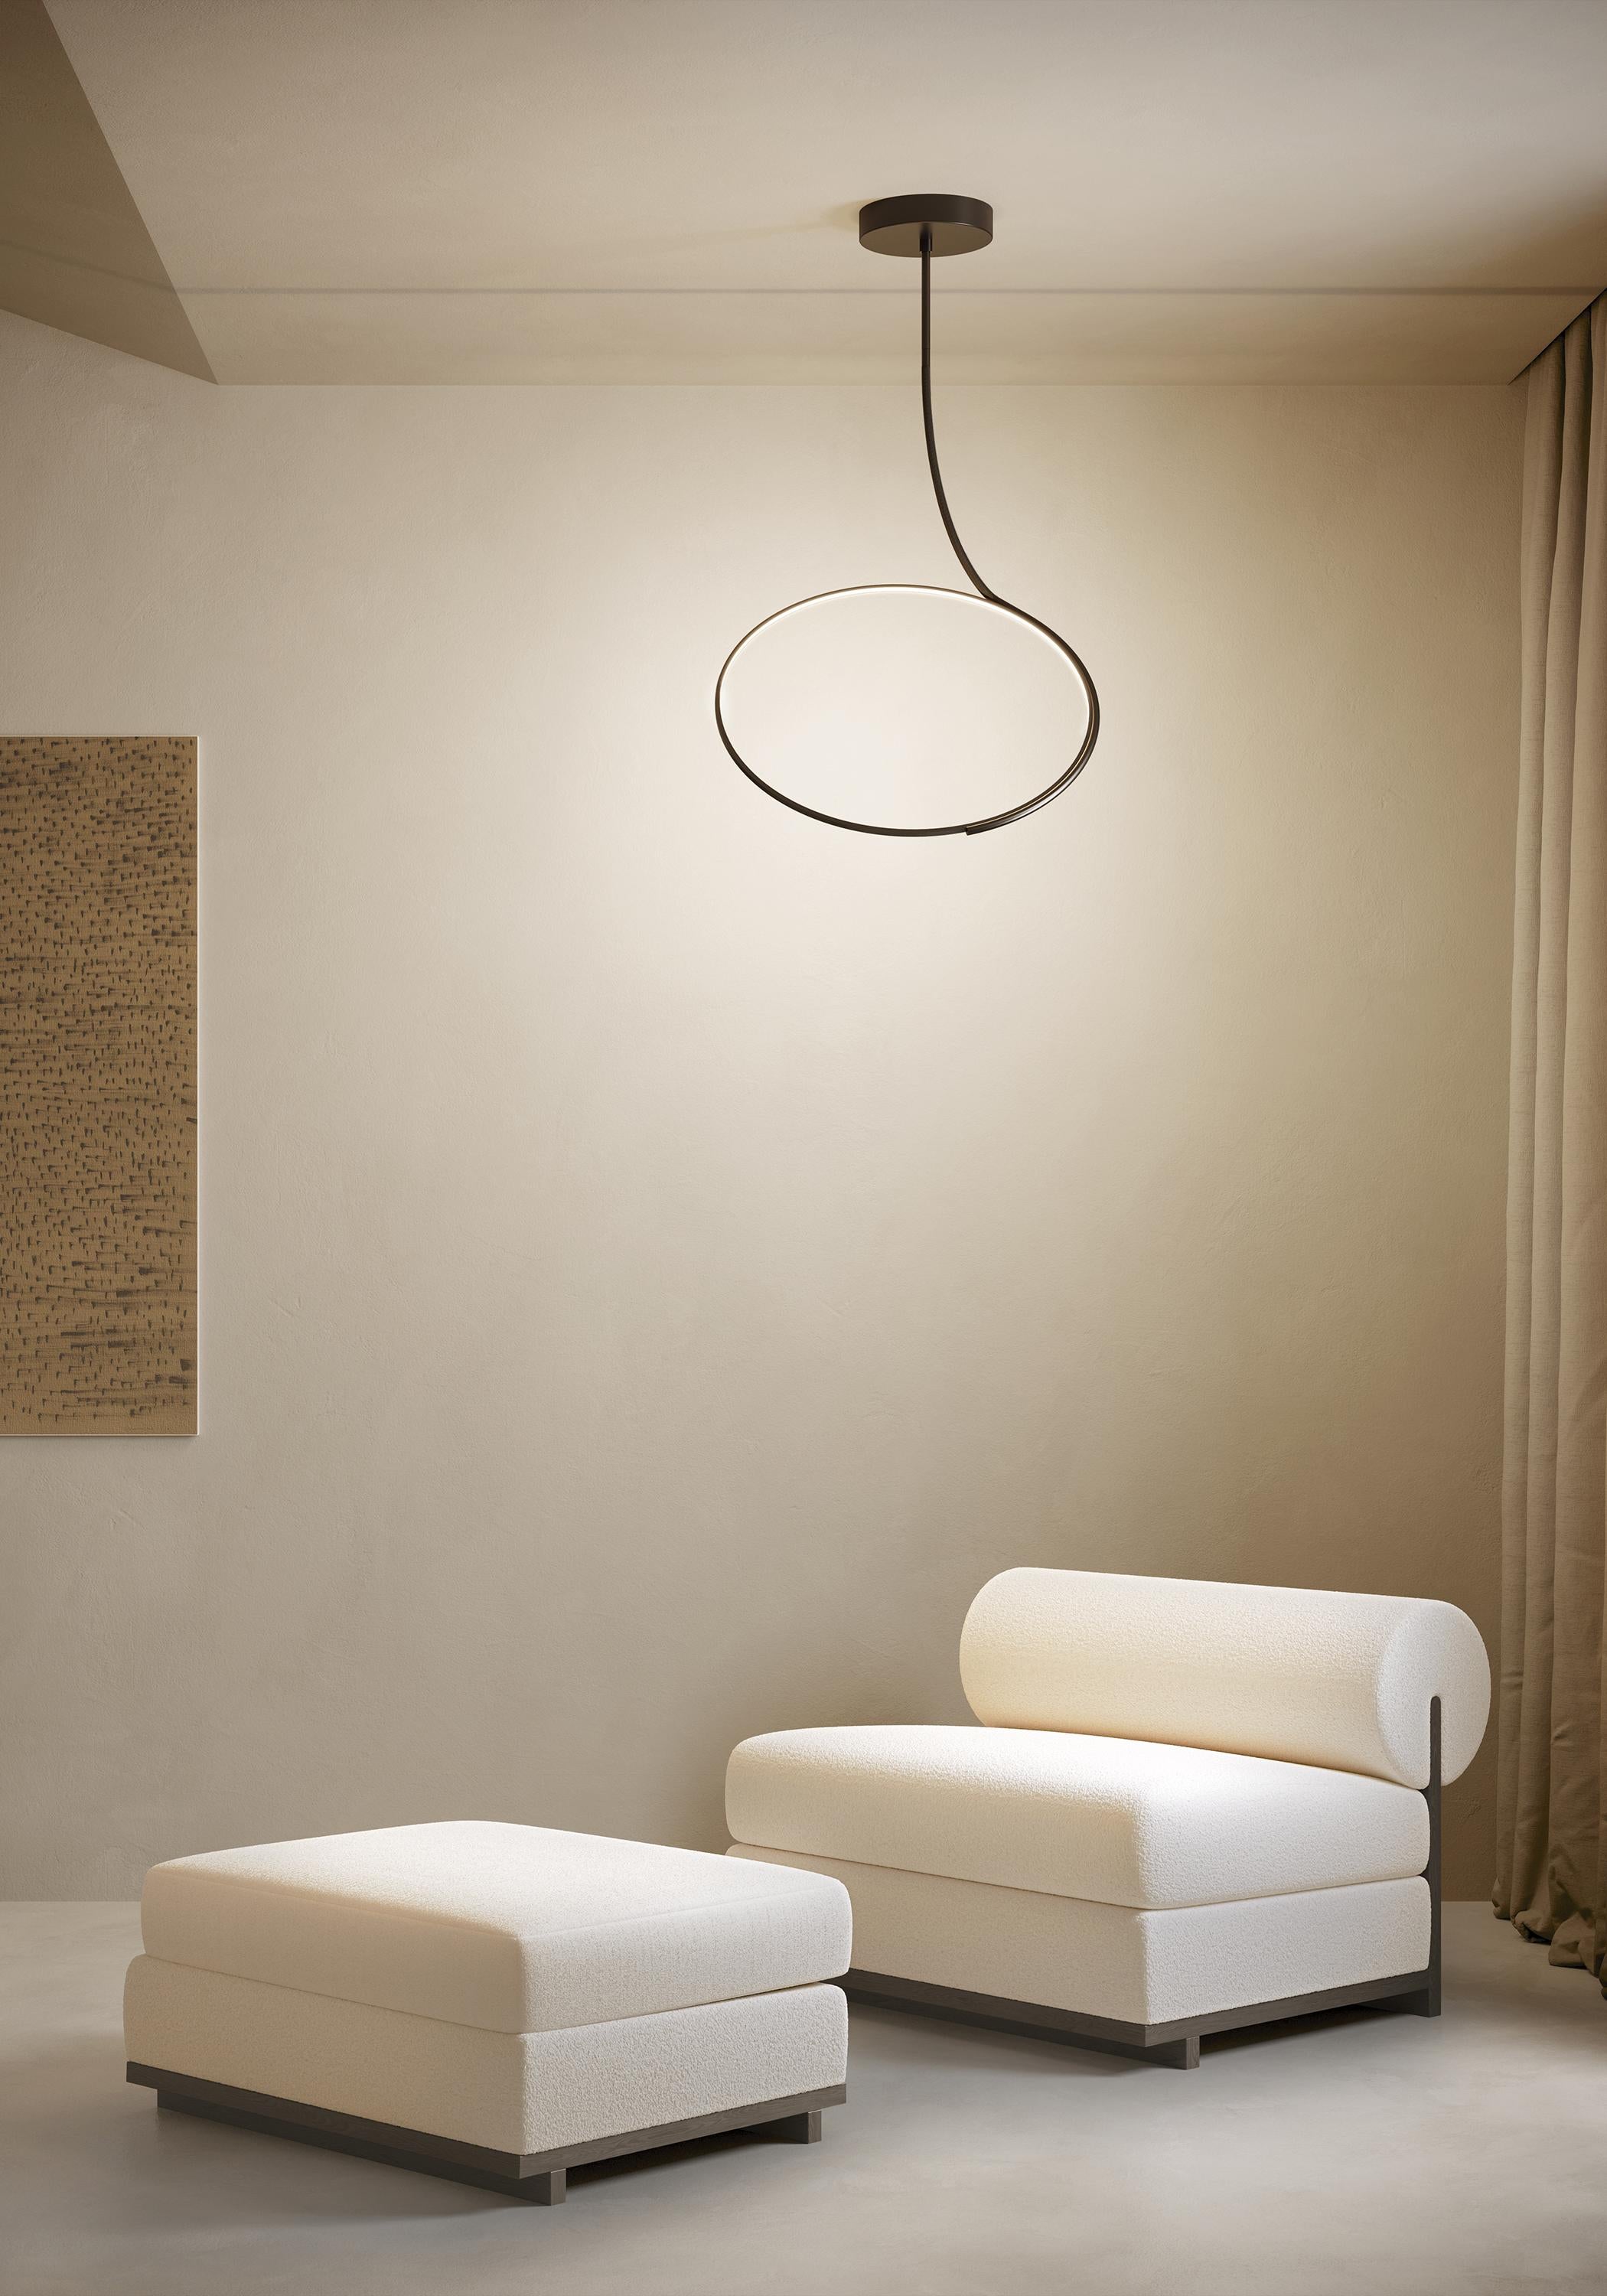 KDLN Contemporary POISE Led Ceiling Lamp In New Condition For Sale In Trezzano sul Naviglio, Milano Lombardia